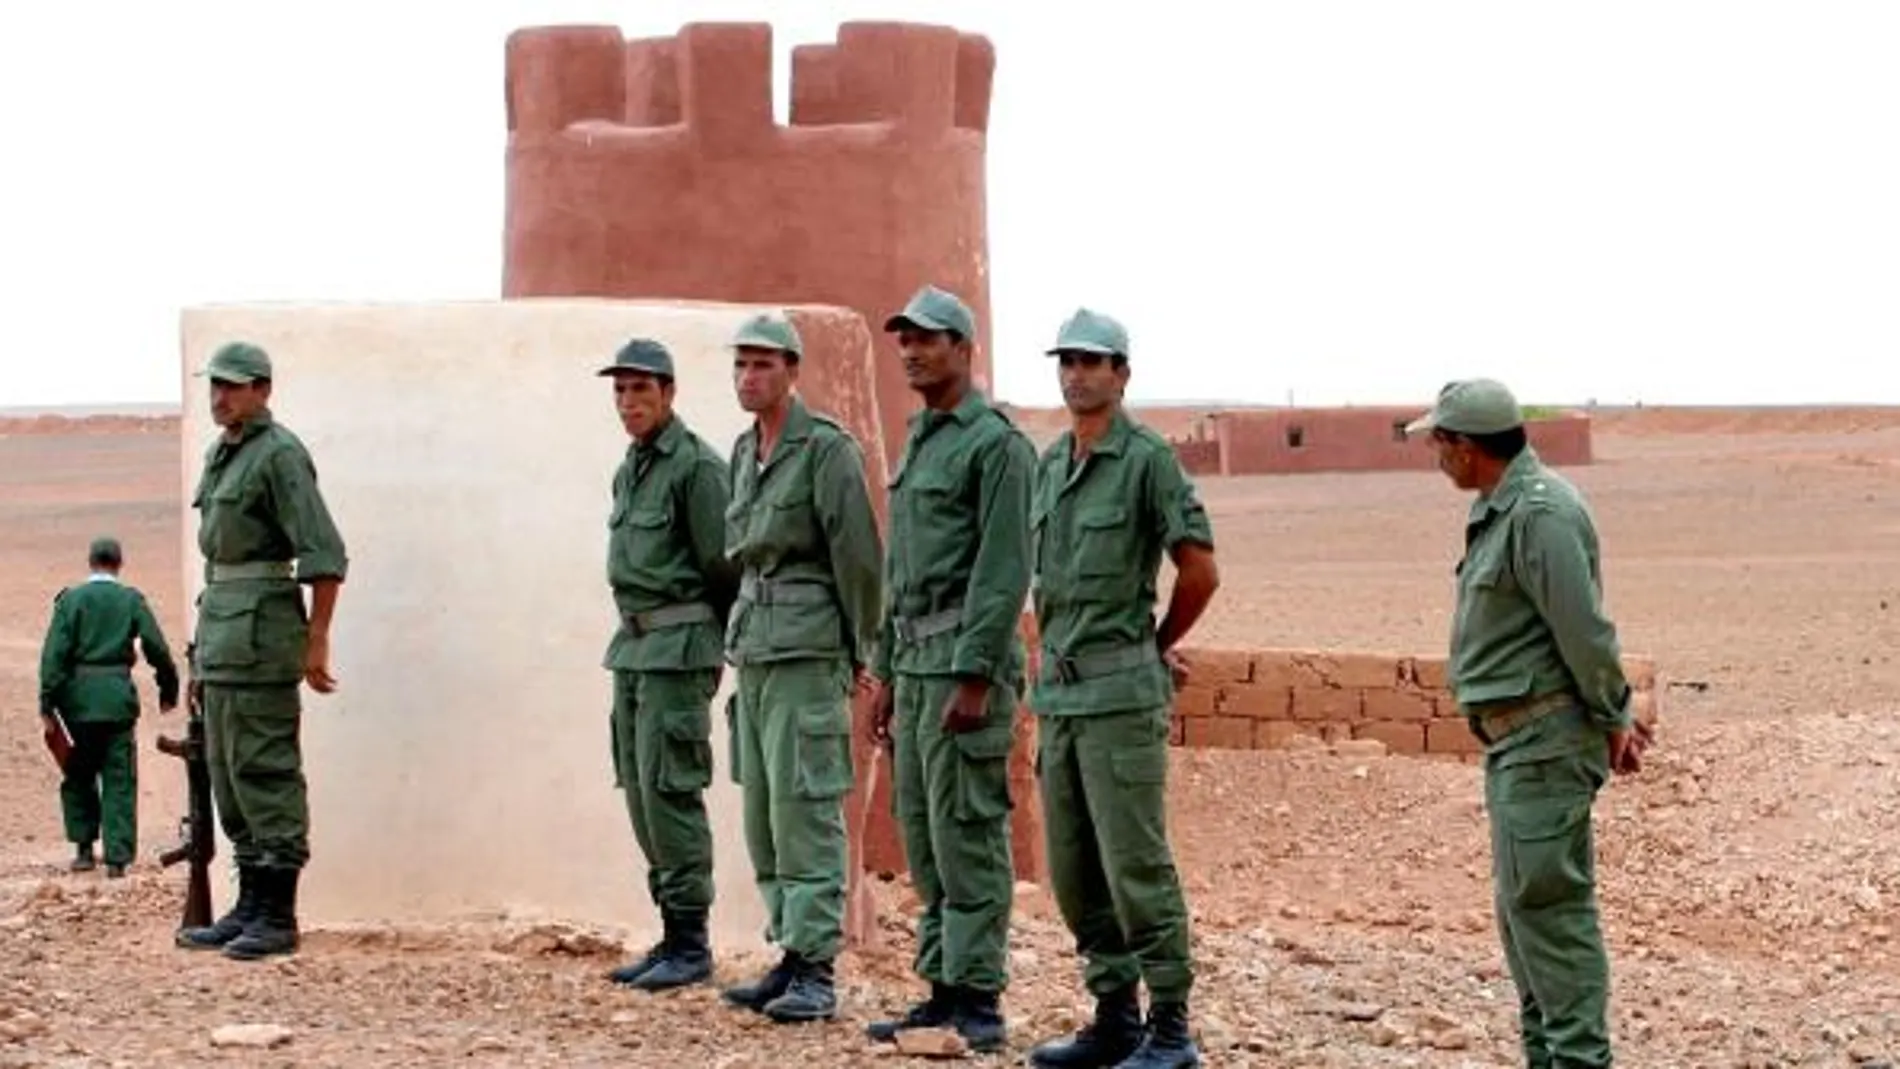 Fuerzas de seguridad marroquíes desplegadas en la frontera con Argelia en una imagen de archivo